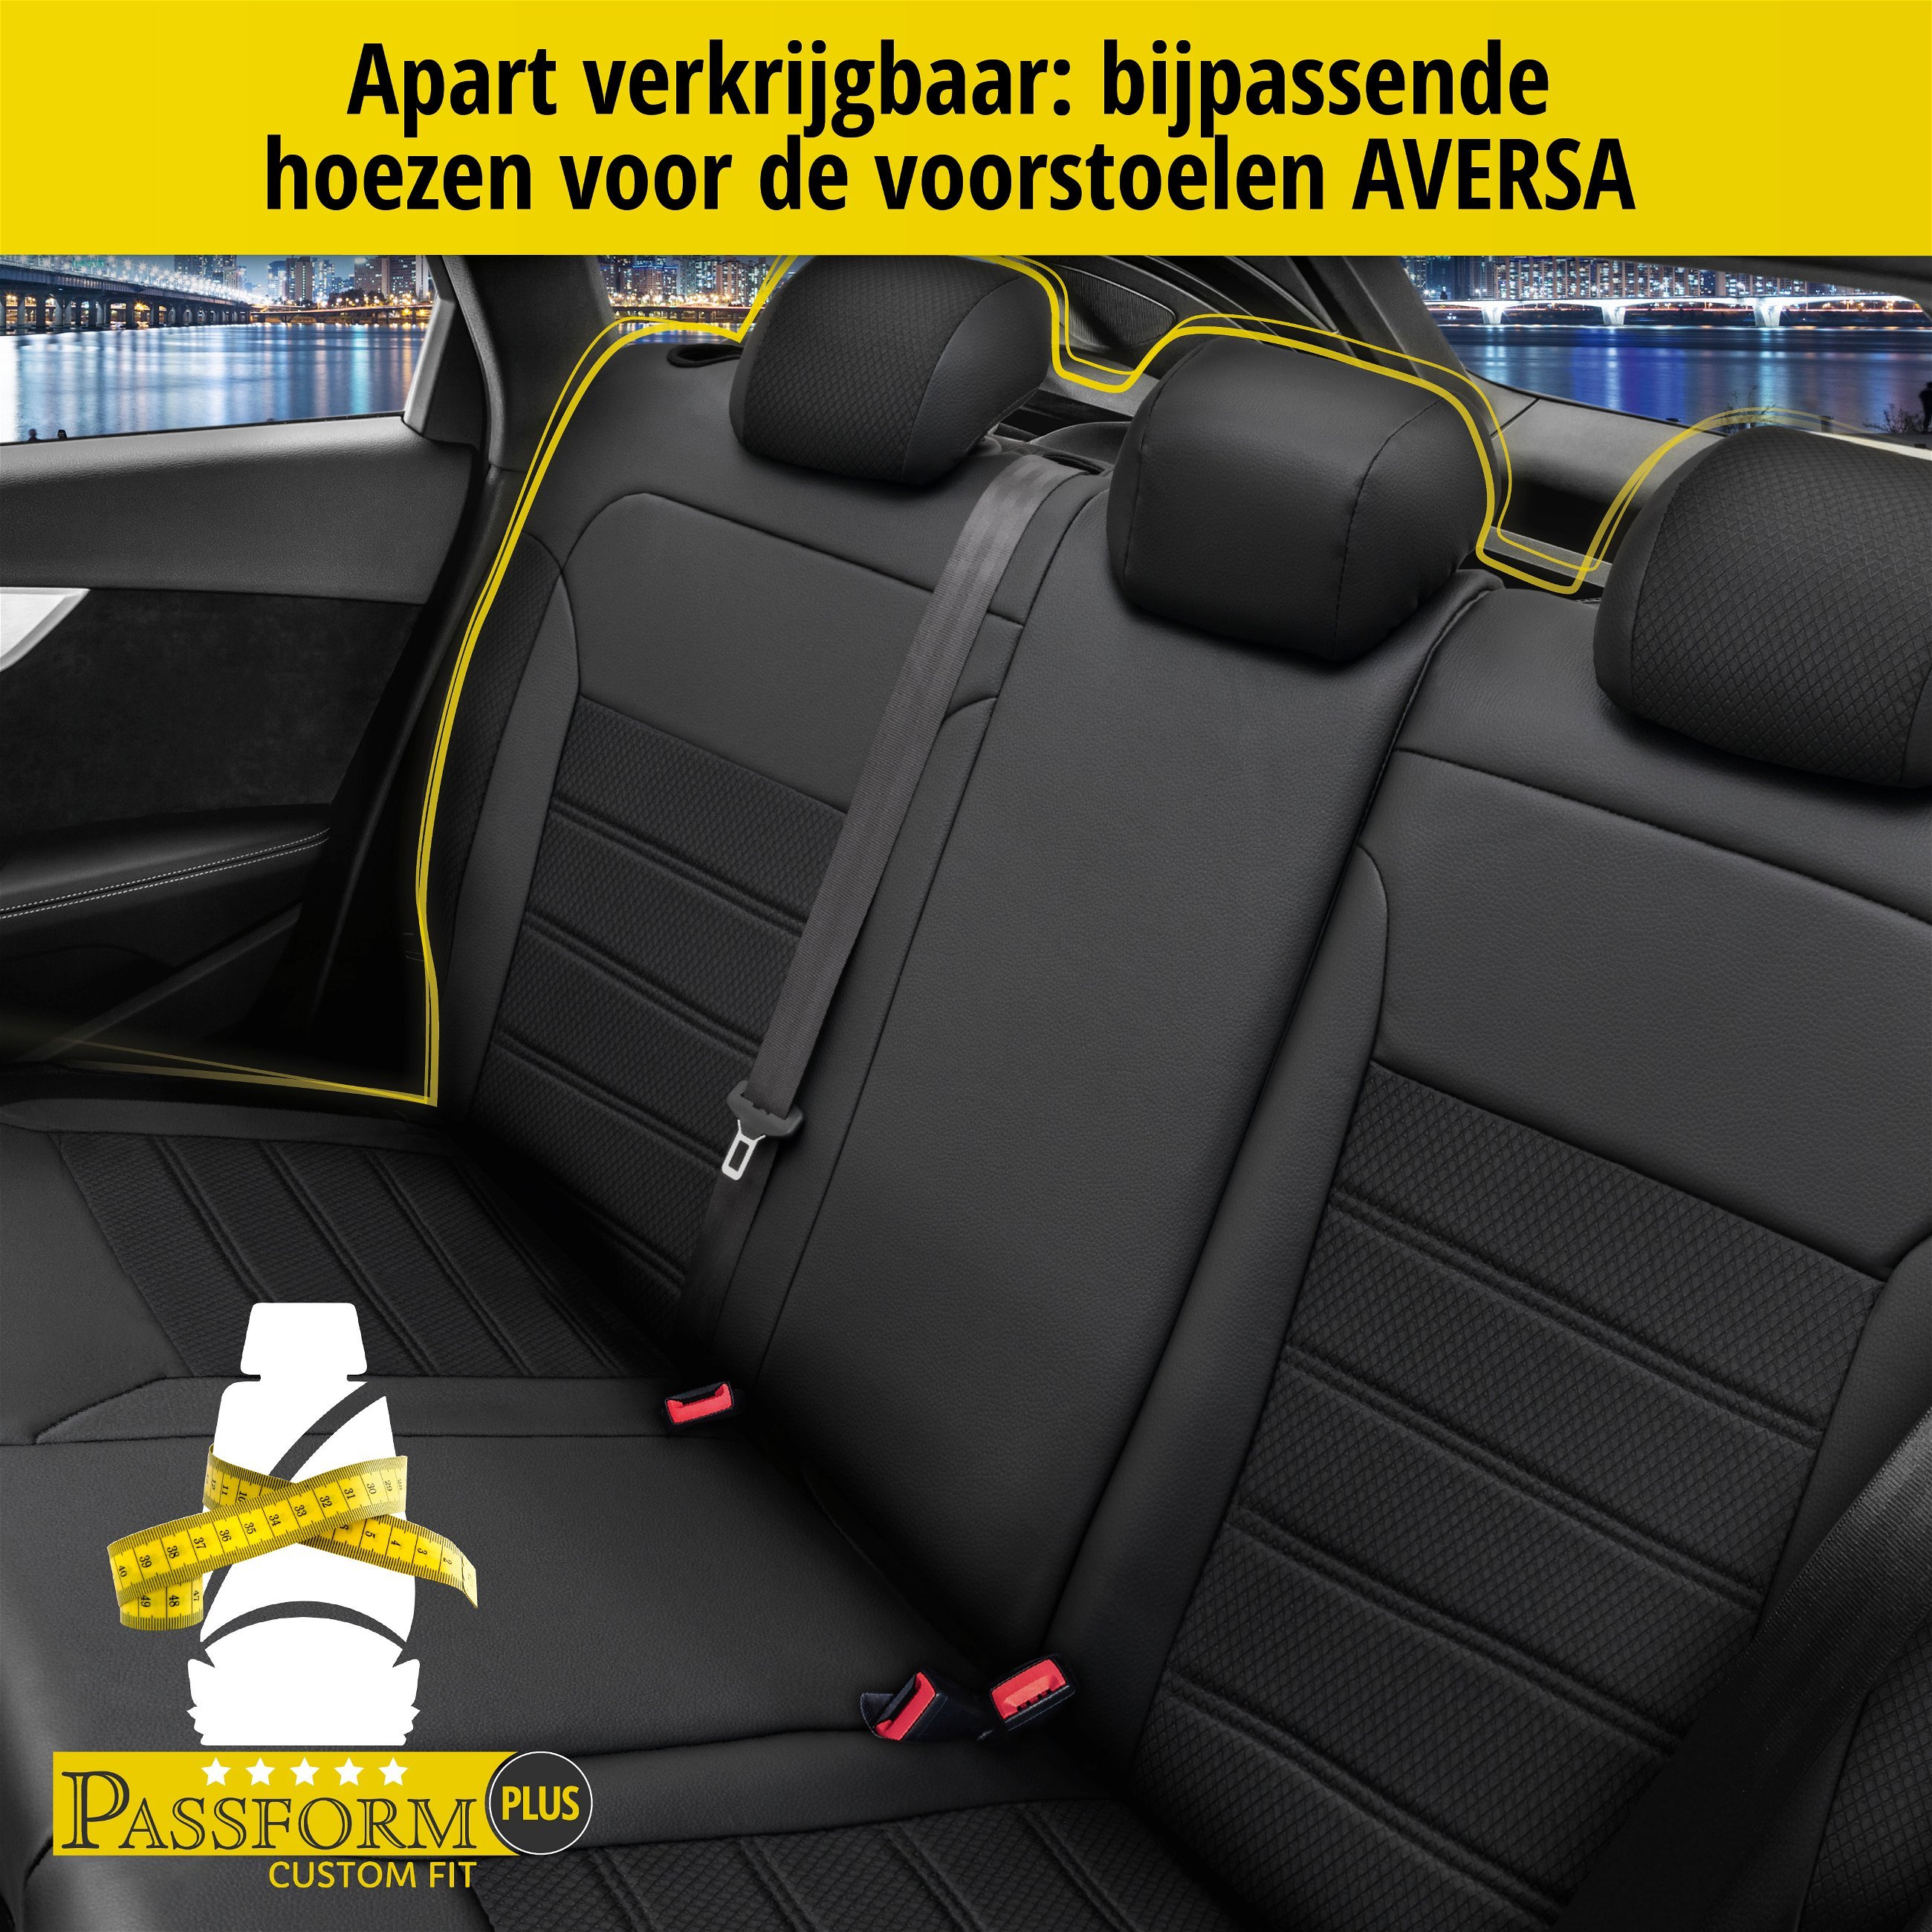 Auto stoelbekleding Aversa geschikt voor BMW X3 (F25) 09/2010-08/2017, 2 enkele zetelhoezen voor standard zetels